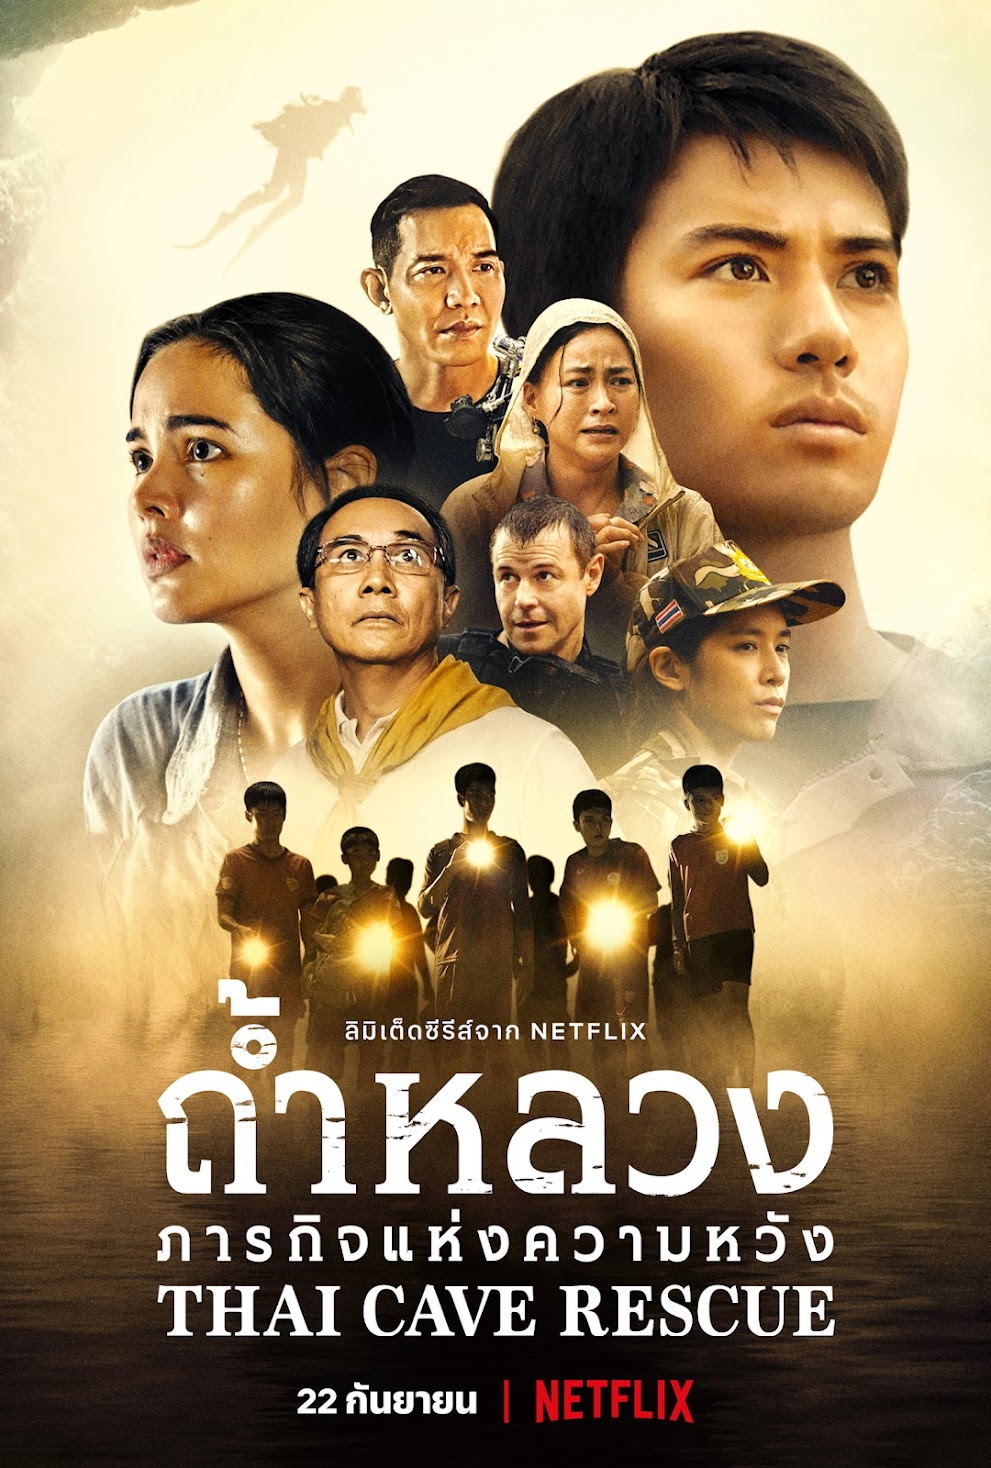 Thai Cave Rescue (2022) tamildubbed movie download